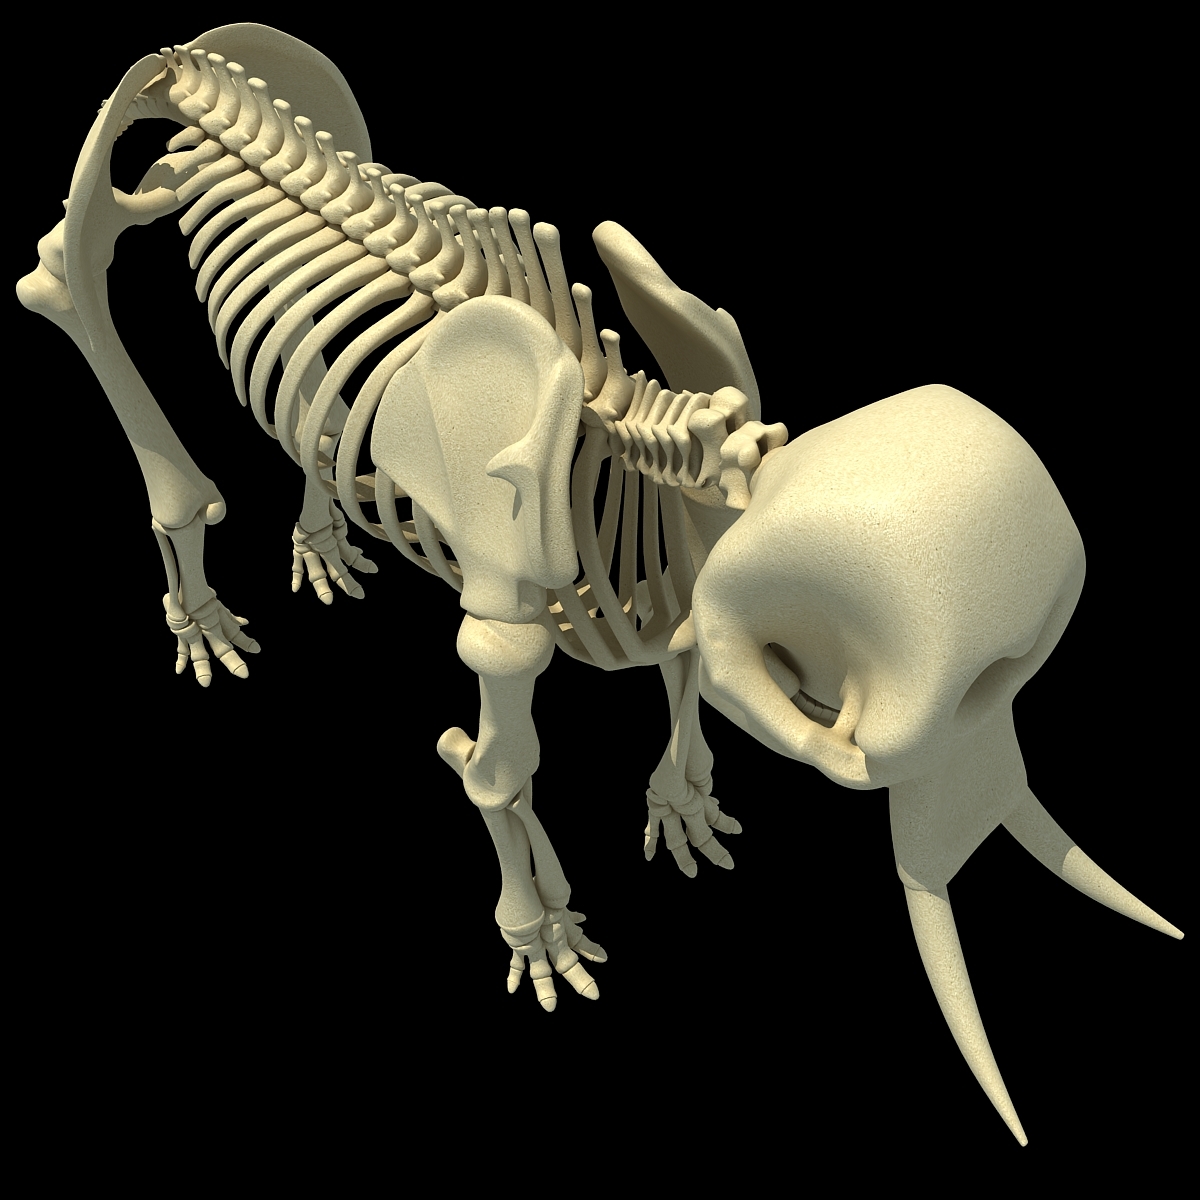 大象骨骼复原图图片